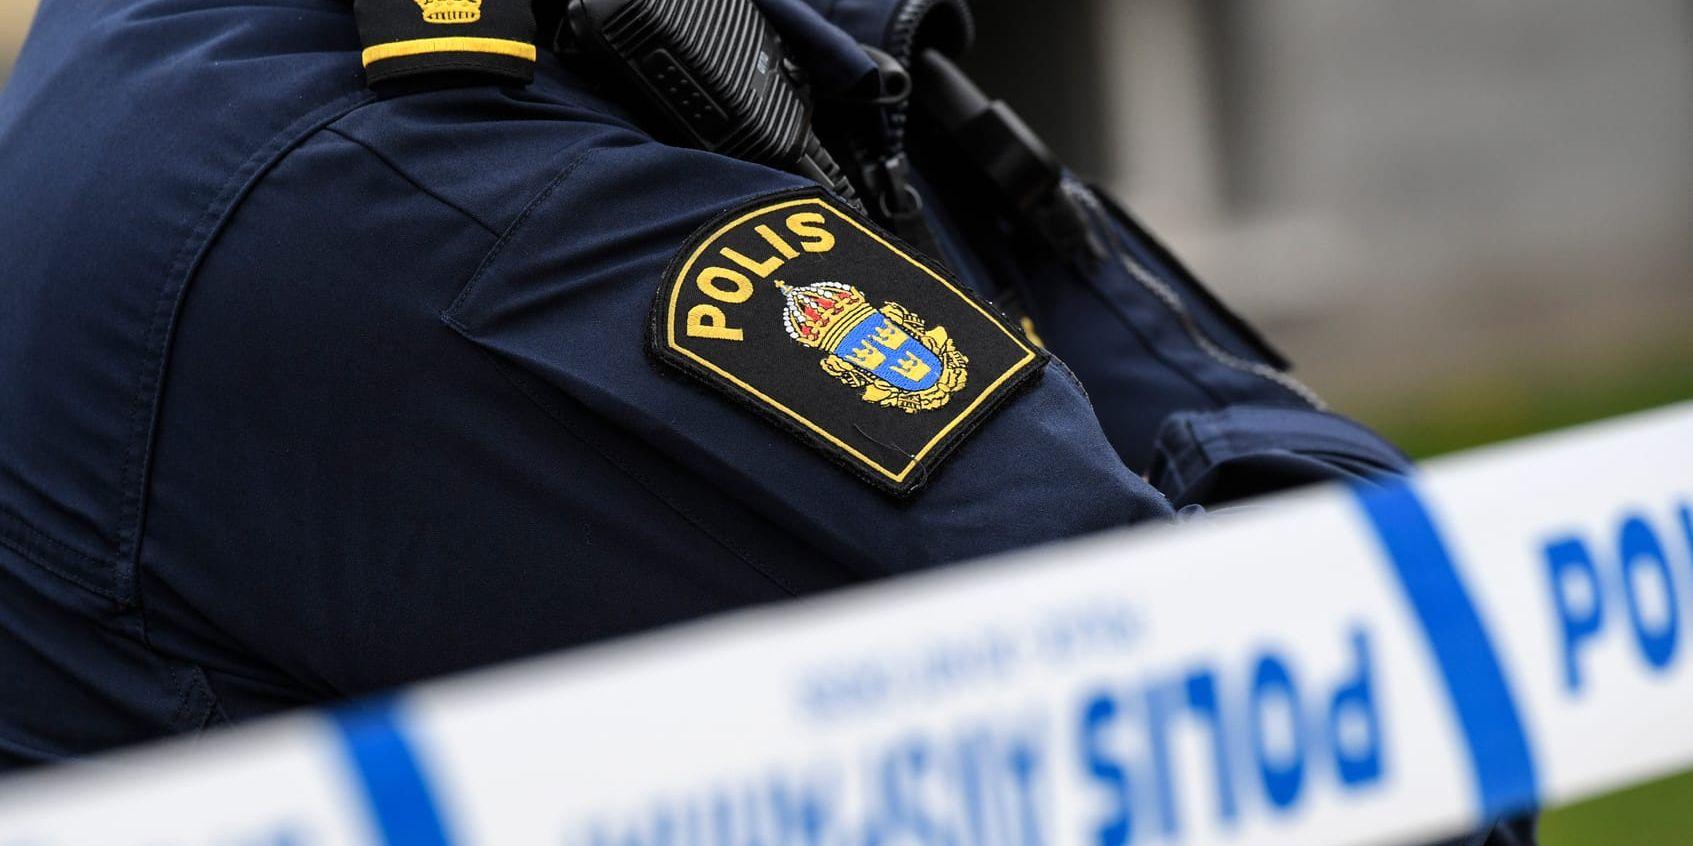 Under tidig lördagsmorgon inkom ett larm till polisen. En man hade hittats svårt skadad i närheten av Backaplan på Hisingen i Göteborg.